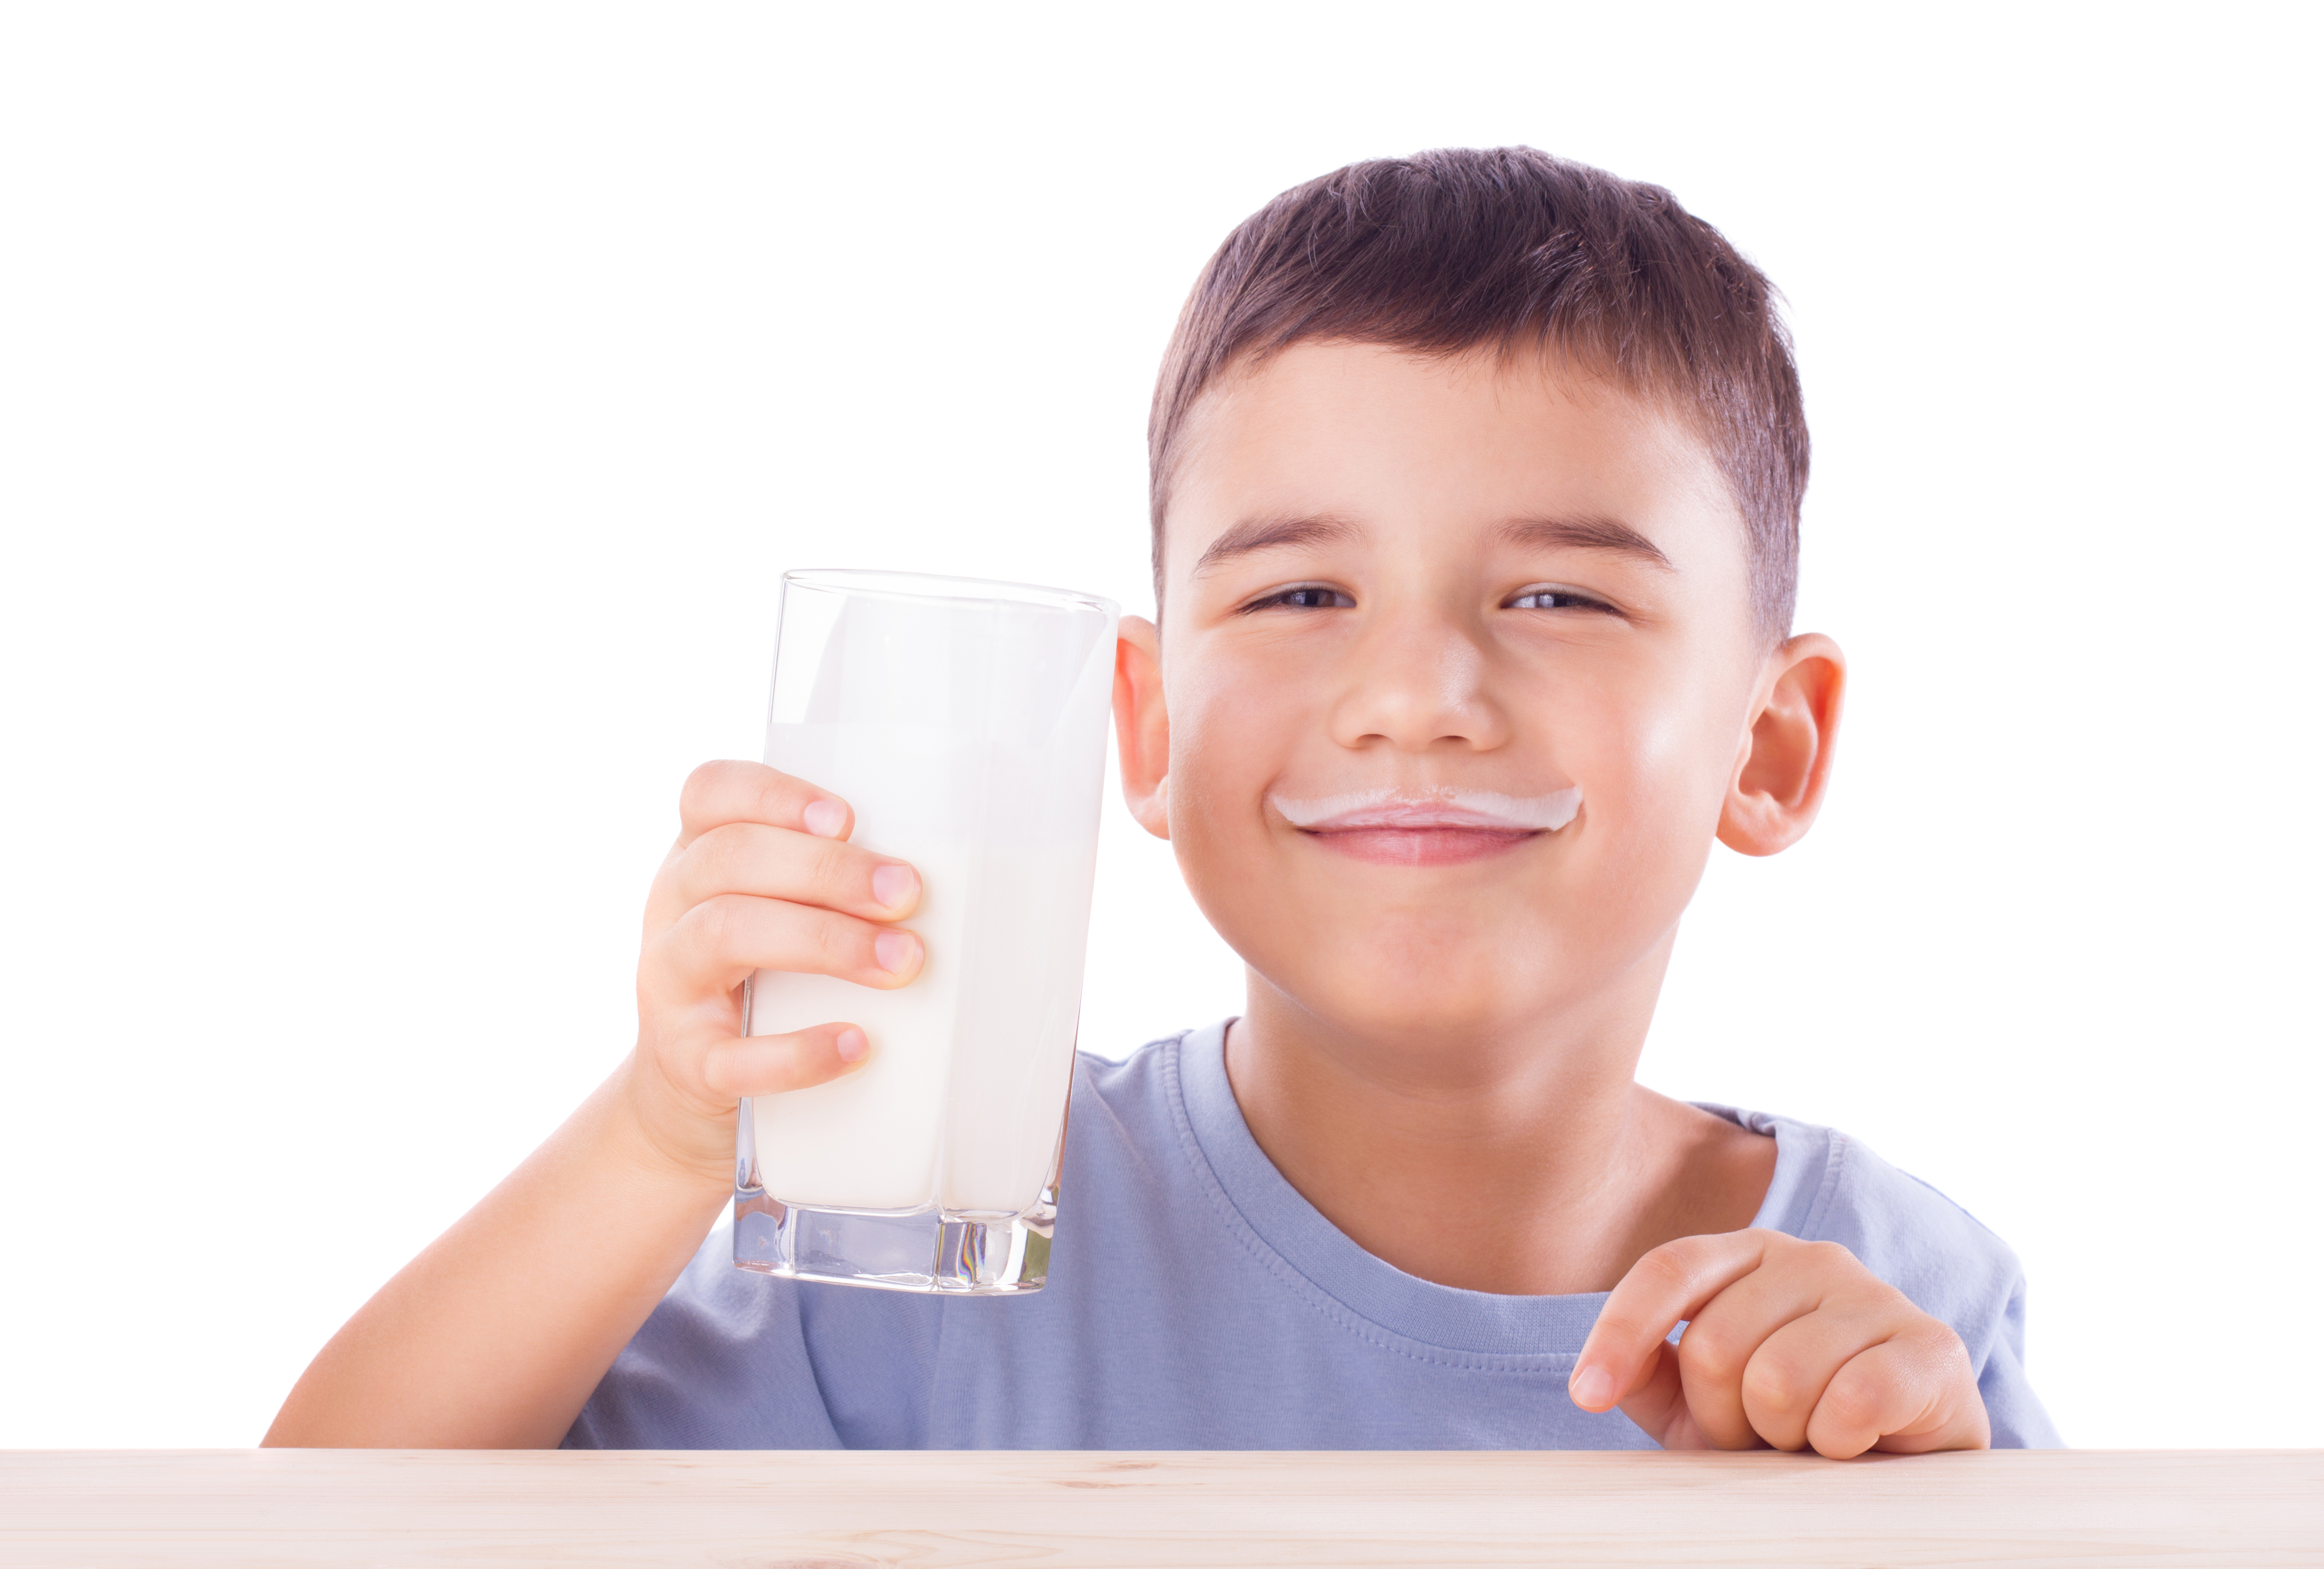 La consommation de lait entier est beaucoup plus élevée dans les familles avec enfants (Visuel Produits laitiers)